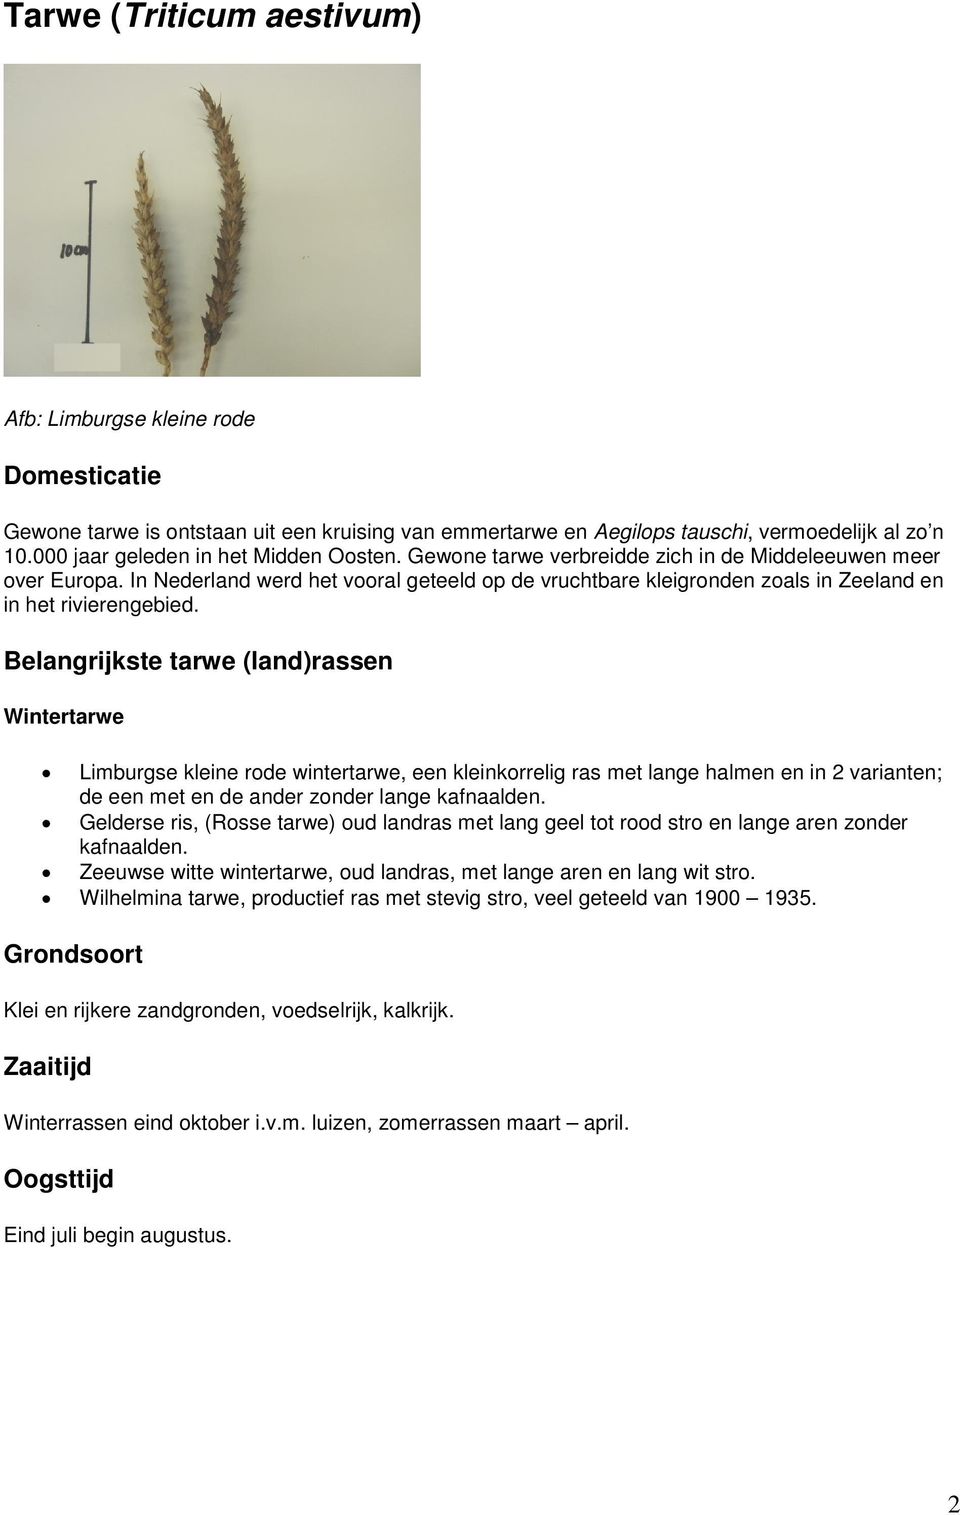 Belangrijkste tarwe (land)rassen Wintertarwe Limburgse kleine rode wintertarwe, een kleinkorrelig ras met lange halmen en in 2 varianten; de een met en de ander zonder lange kafnaalden.